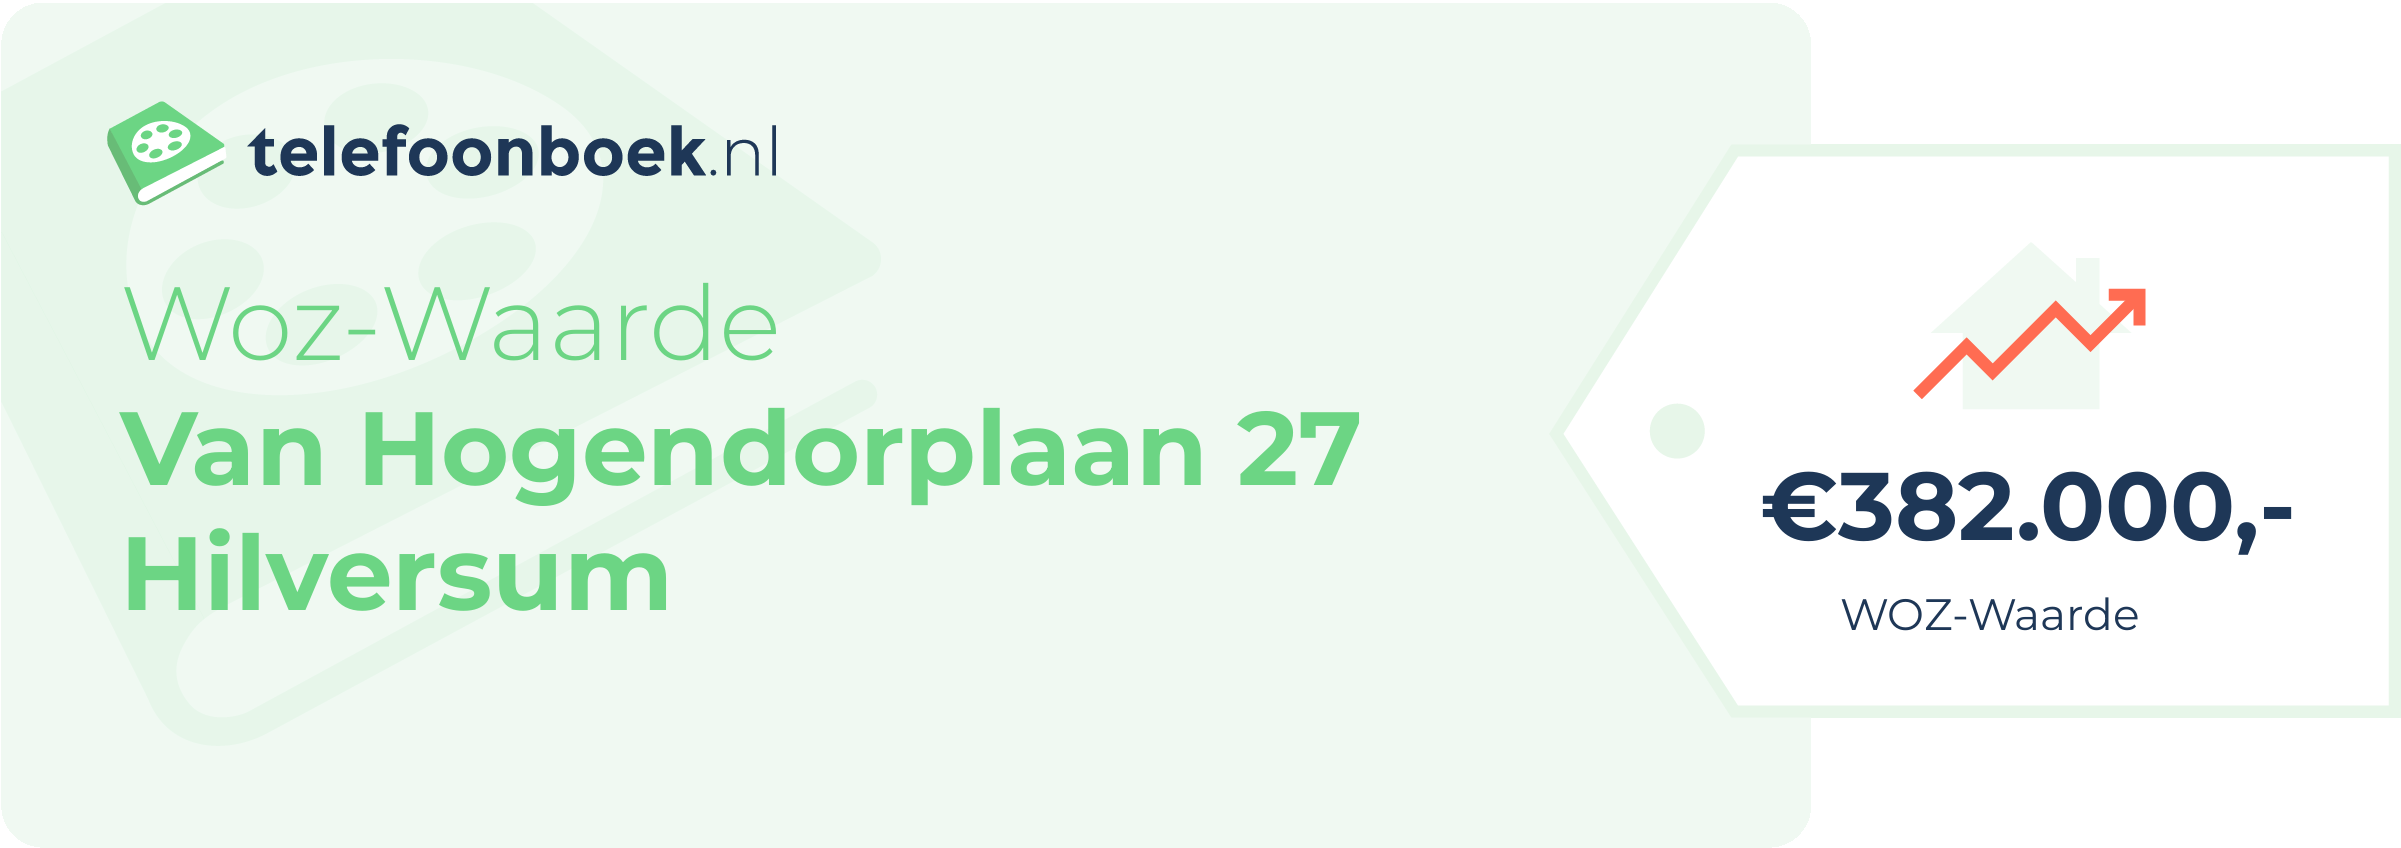 WOZ-waarde Van Hogendorplaan 27 Hilversum